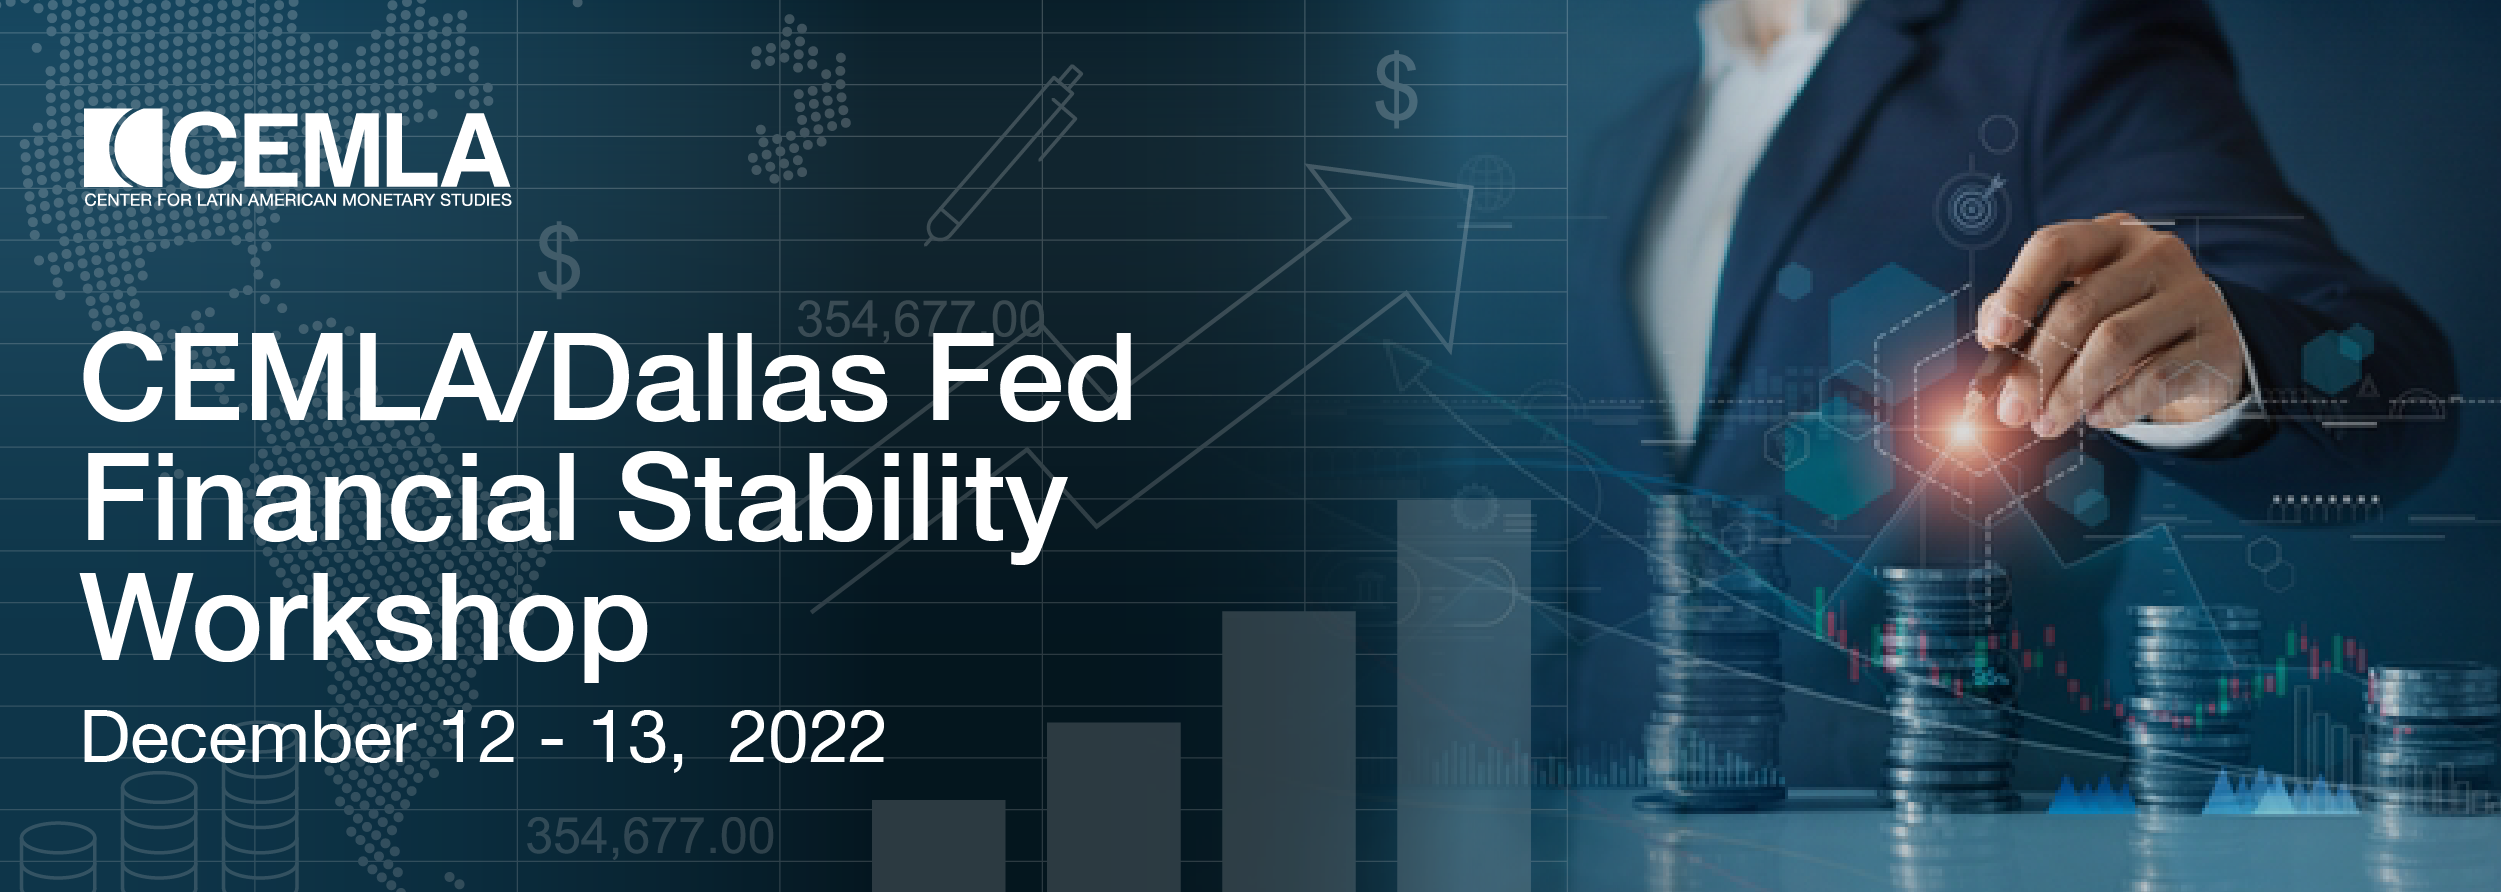  Conferencia de Estabilidad Financiera CEMLA/Dallas Fed